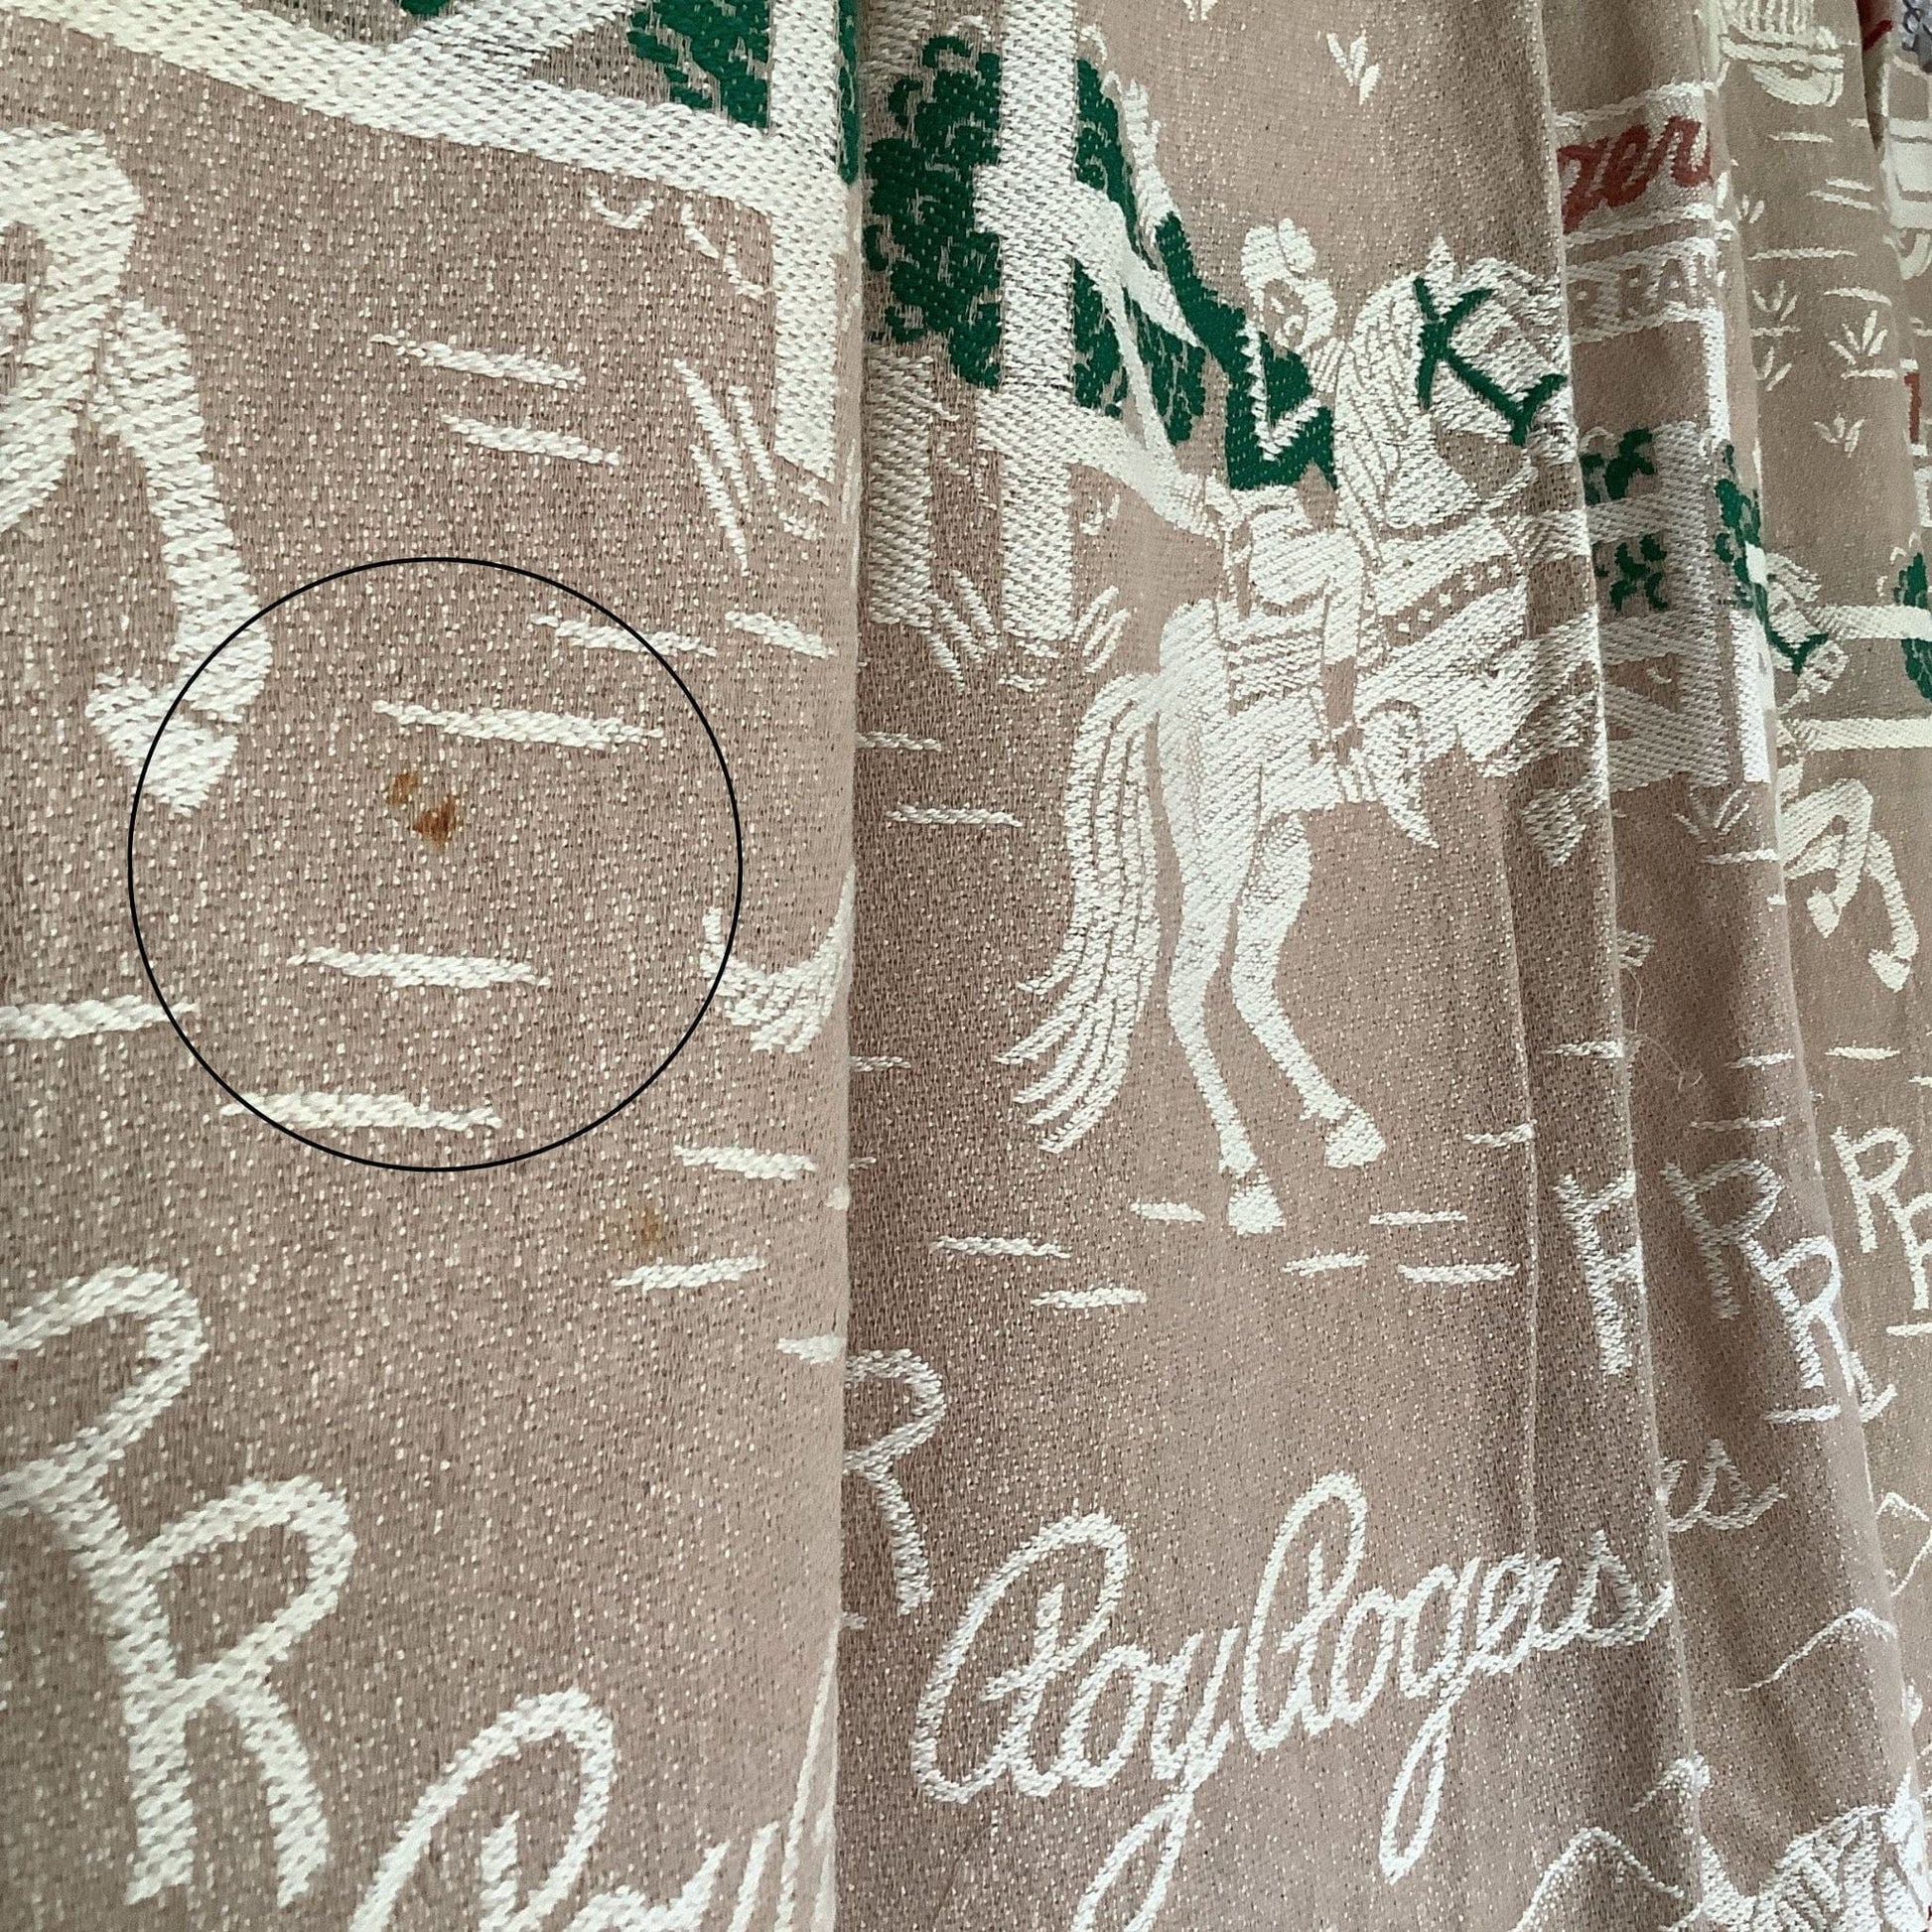 Retro Roy Rogers Curtains Multi / Cotton / Vintage 1950s